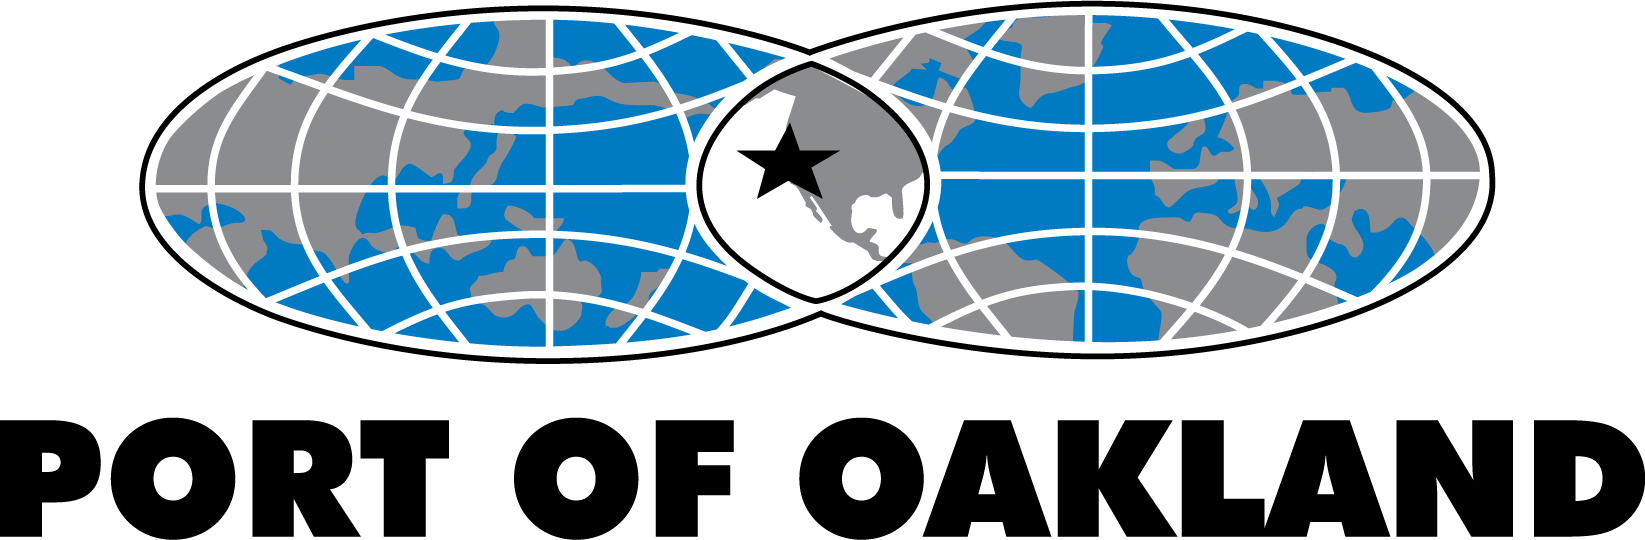 PortofOakland_logo.png